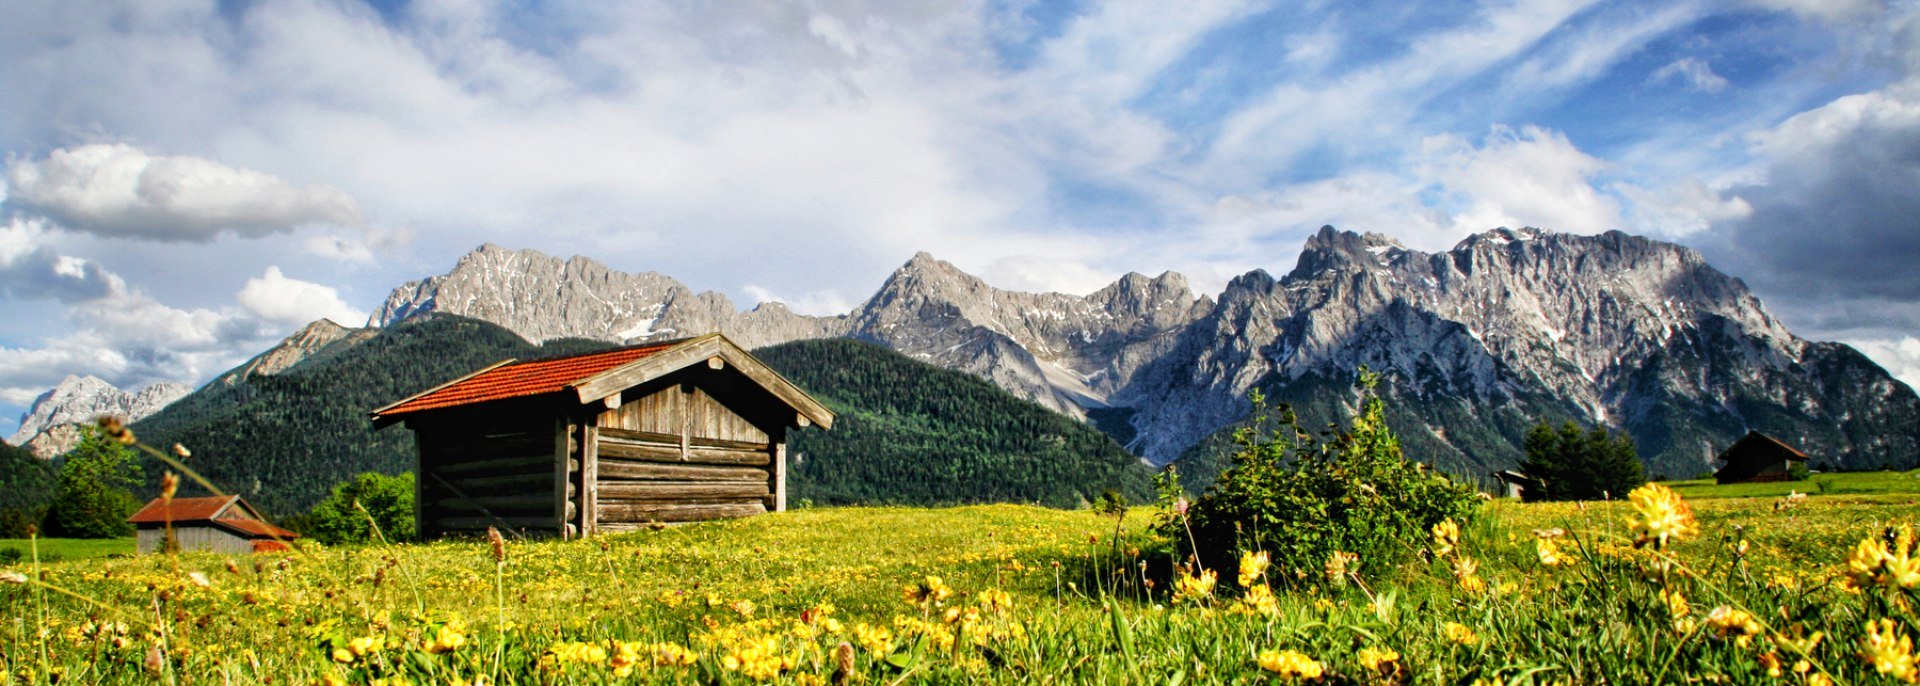 Sommer in der Alpenwelt Karwendel - Ein typischer Wiesmahdstadel in den Buckelwiesen der Alpenwelt Karwendel, © Alpenwelt Karwendel | Wera Tuma